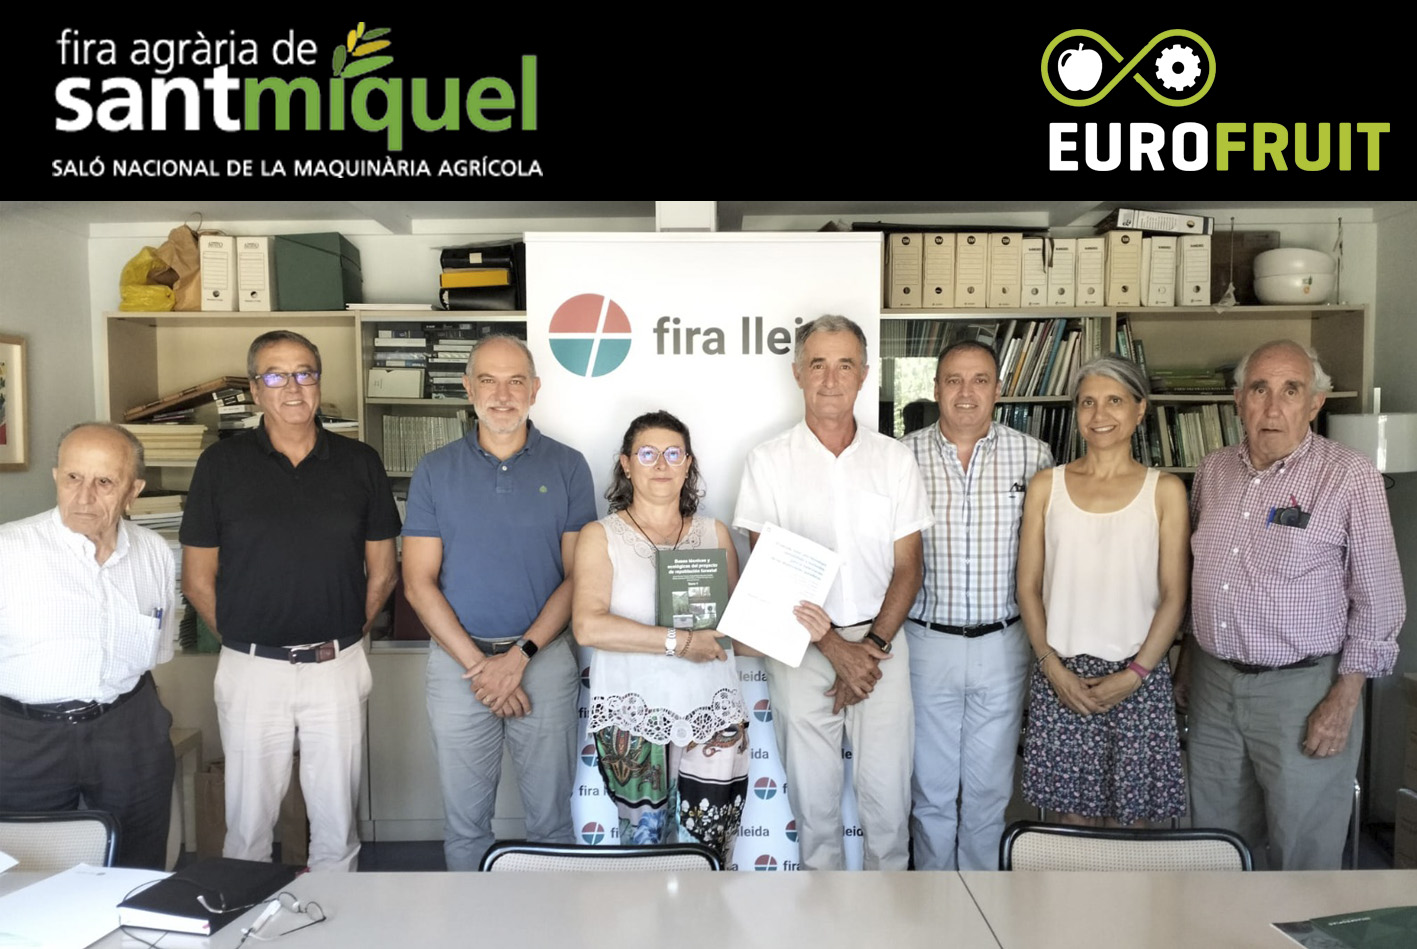 Una obra sobre repoblación forestal gana el Premio del Libro Agrario de la Fira de SANT MIQUEL